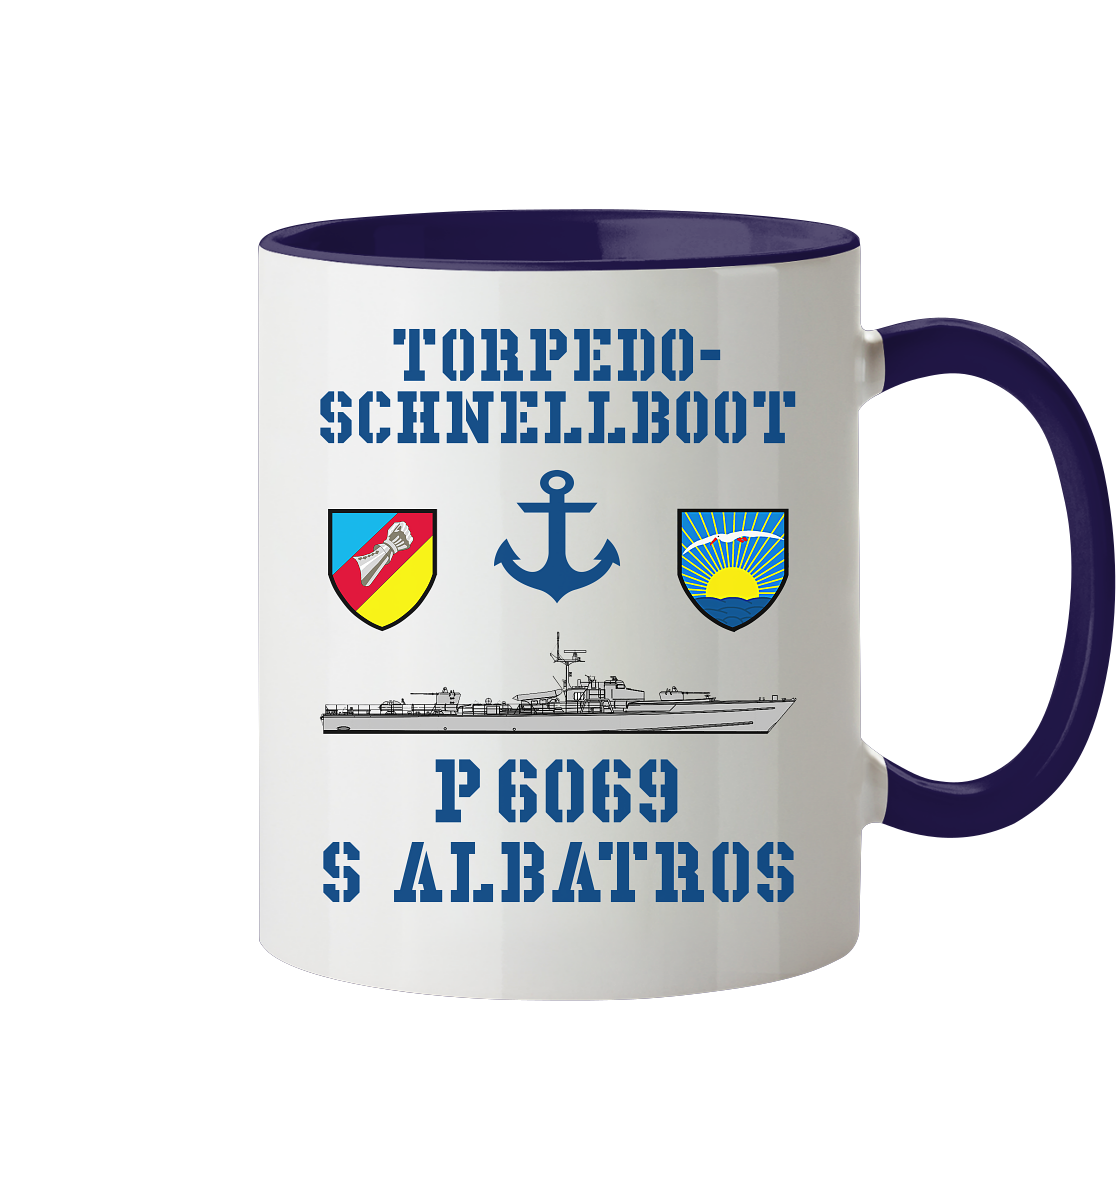 Torpedo-Schnellboot P6069 ALBATROS Anker - Tasse zweifarbig